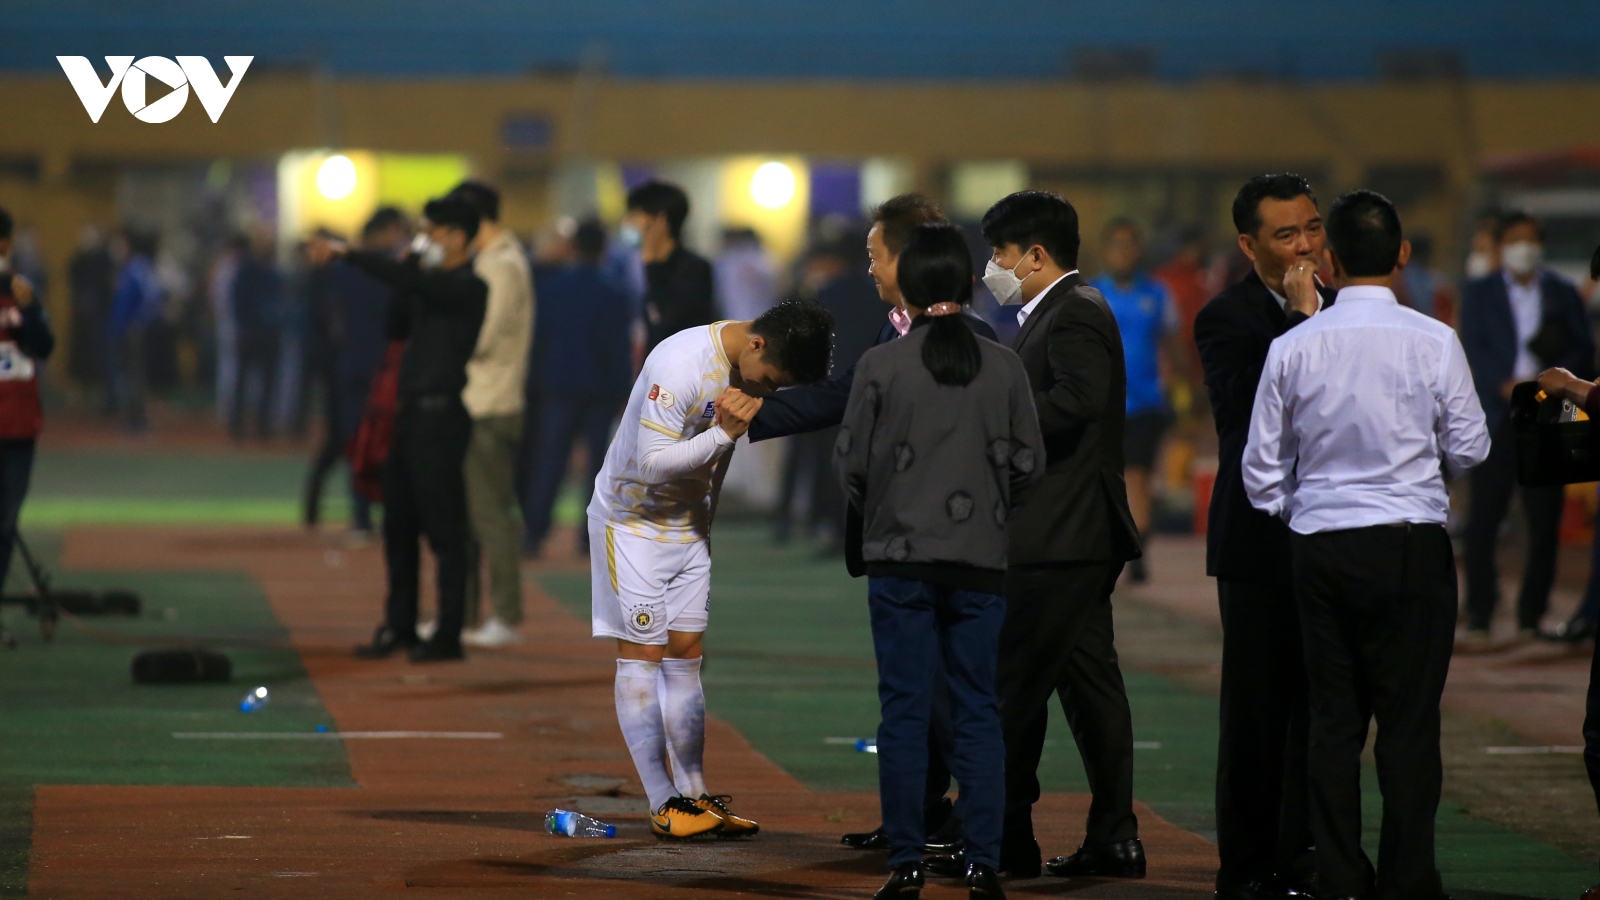 Quang Hải cúi đầu cảm ơn bầu Hiển sau trận đấu chói sáng cho Hà Nội FC